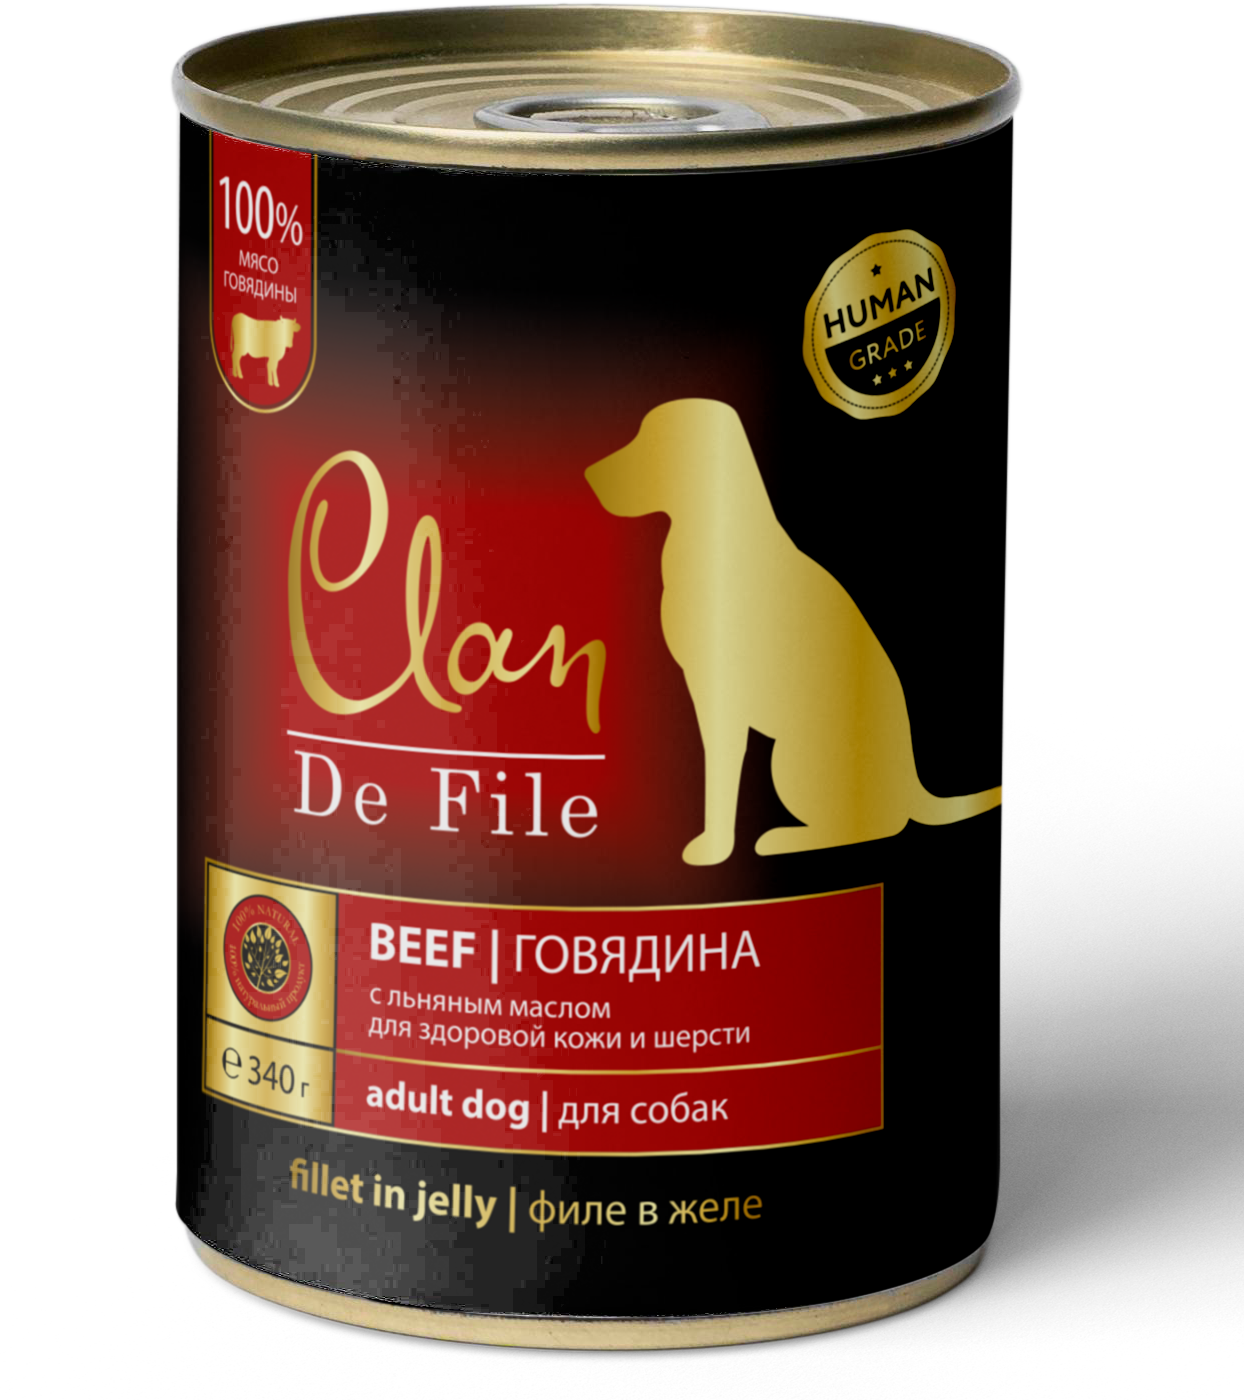 Консервы для собак Clan De File, говядина, 340г